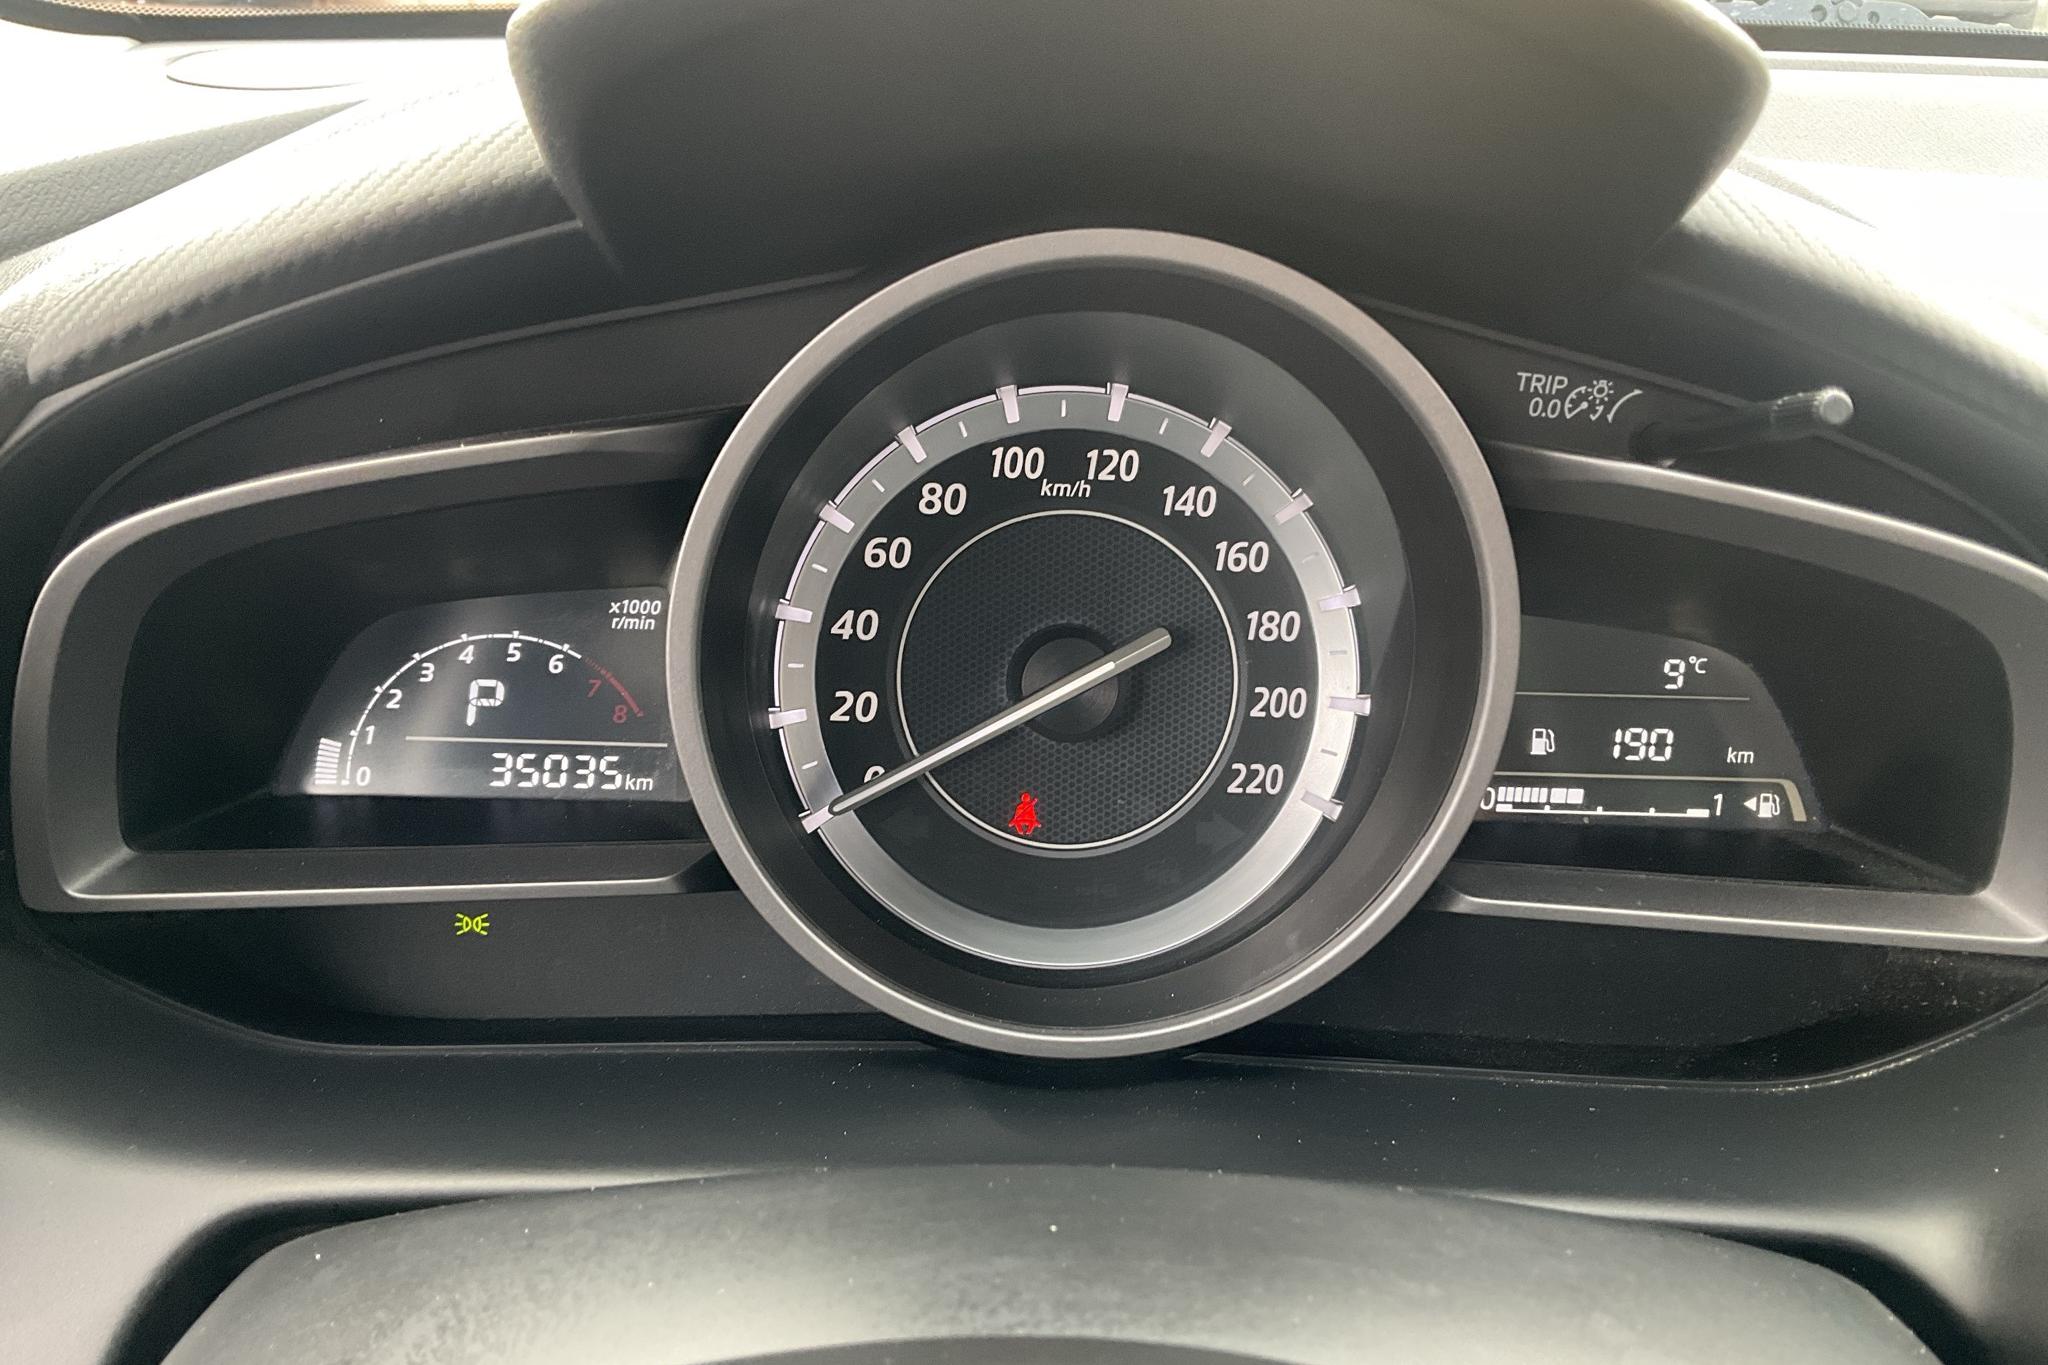 Mazda 2 1.5 5dr (90hk) - 35 030 km - Automatic - black - 2017